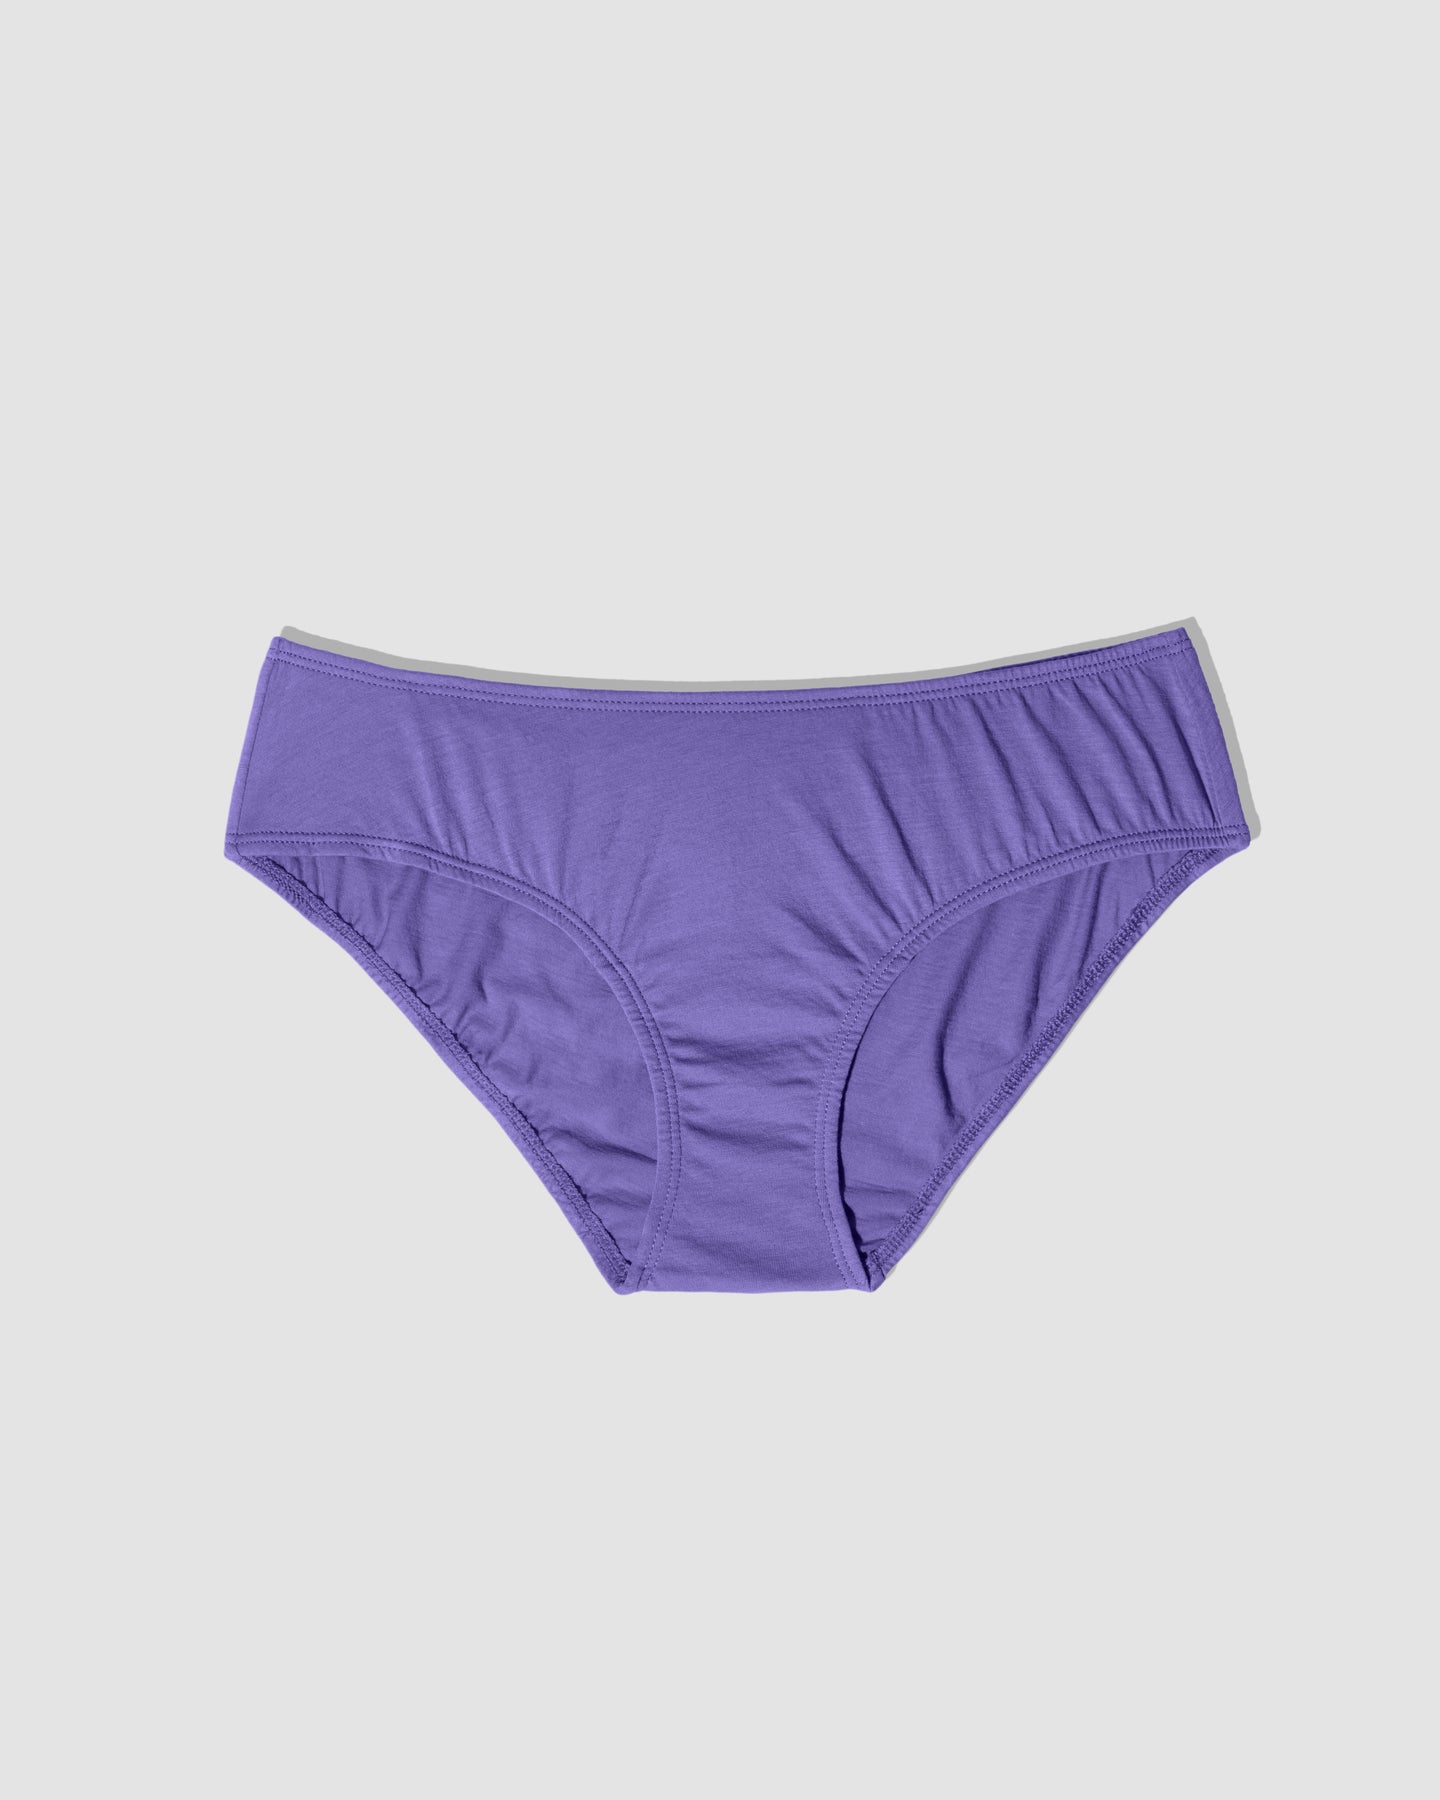 Fashion 100% Cotton 6-piece Ladies Underwear Sexy Briefs